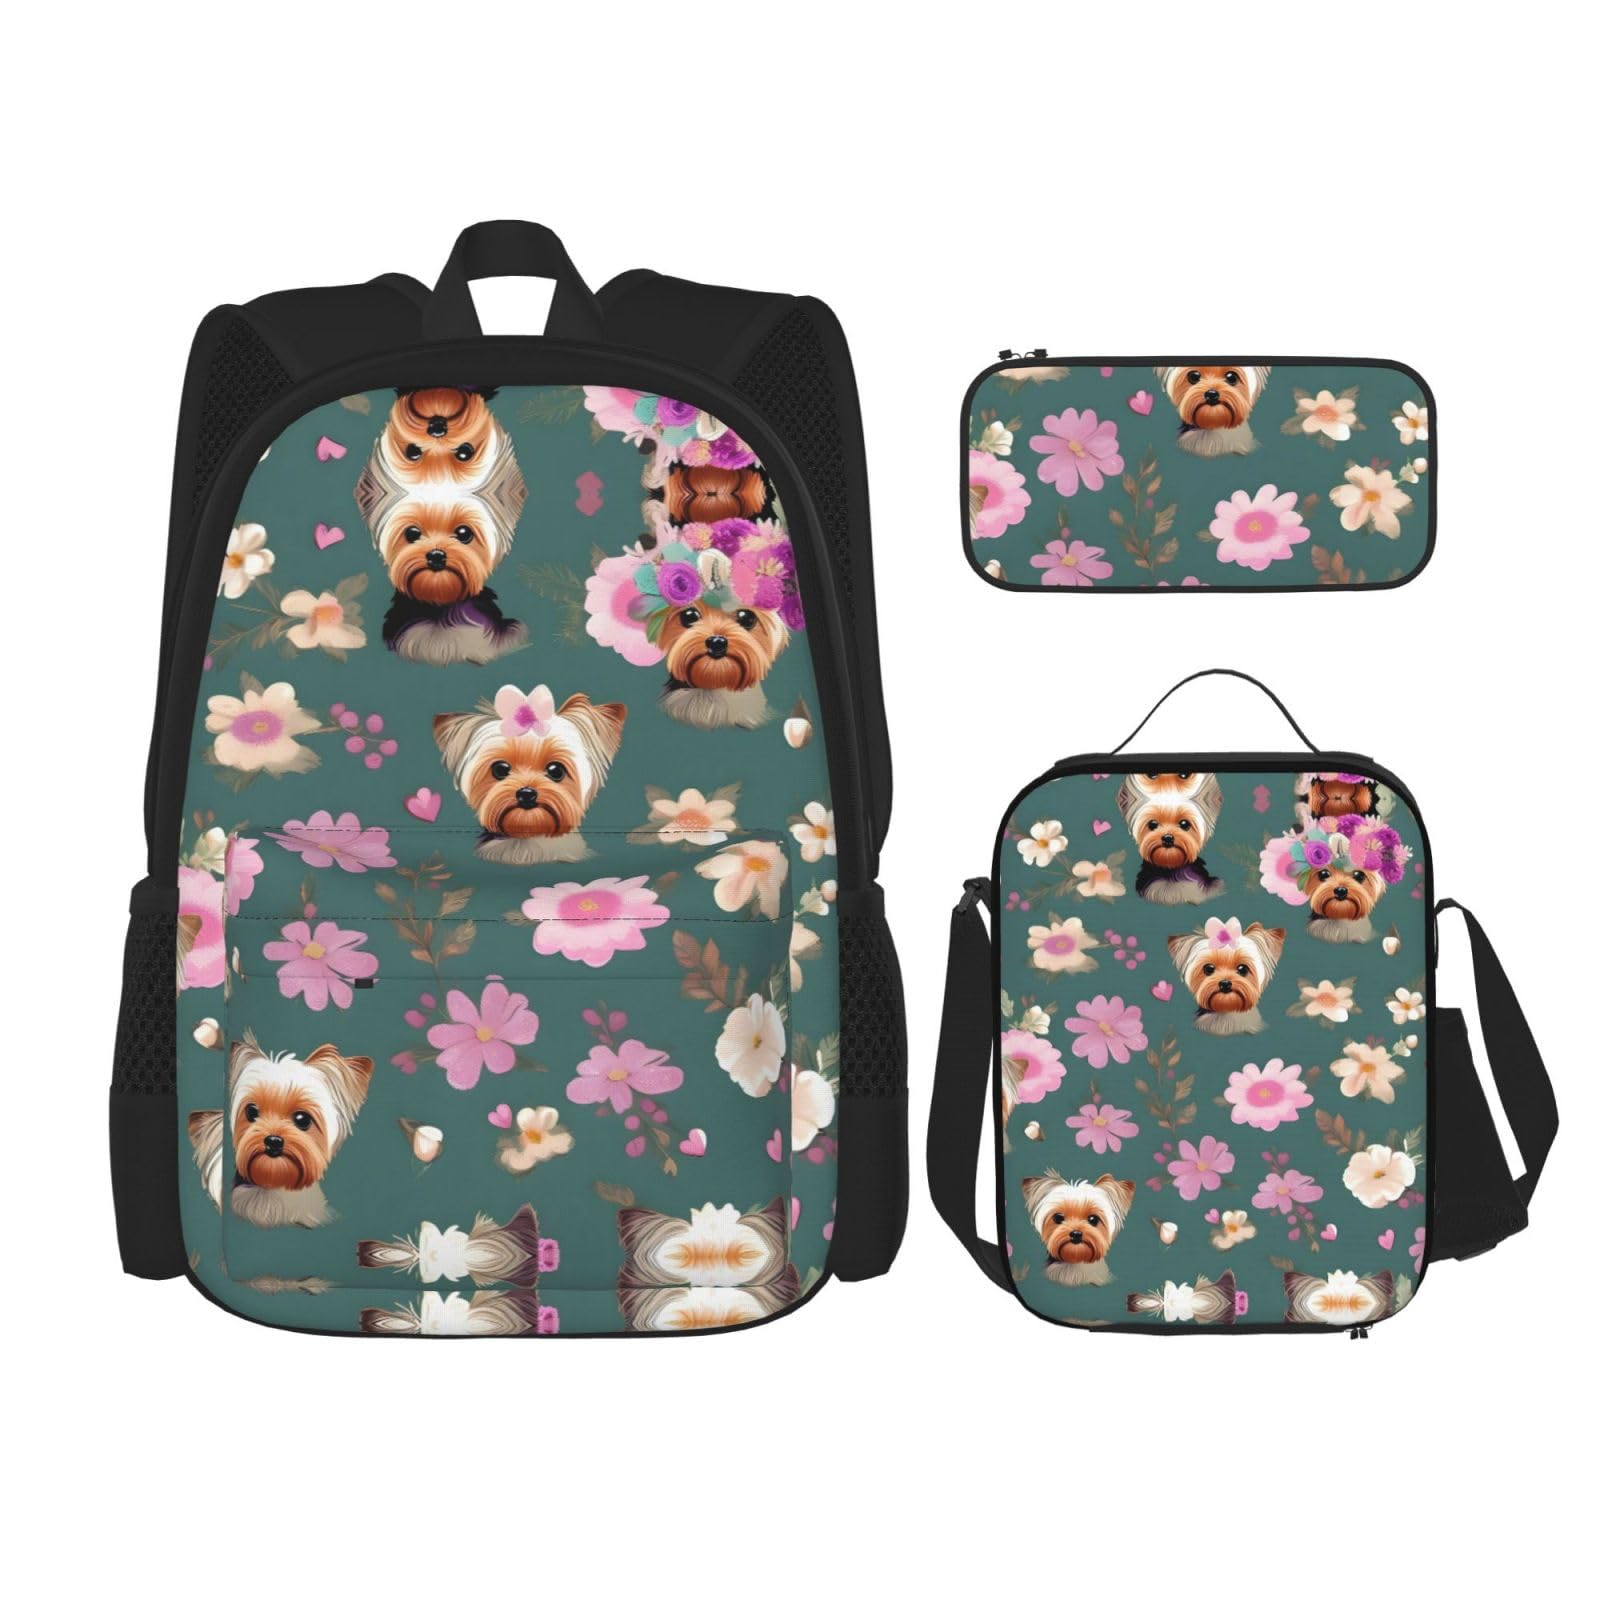 送料無料NEZIH Yorkie Floral pattern Backpack Travel Daypack With Lunch Box Pencil Bag 3 Pcs Set Casual Rucksack Fashion B